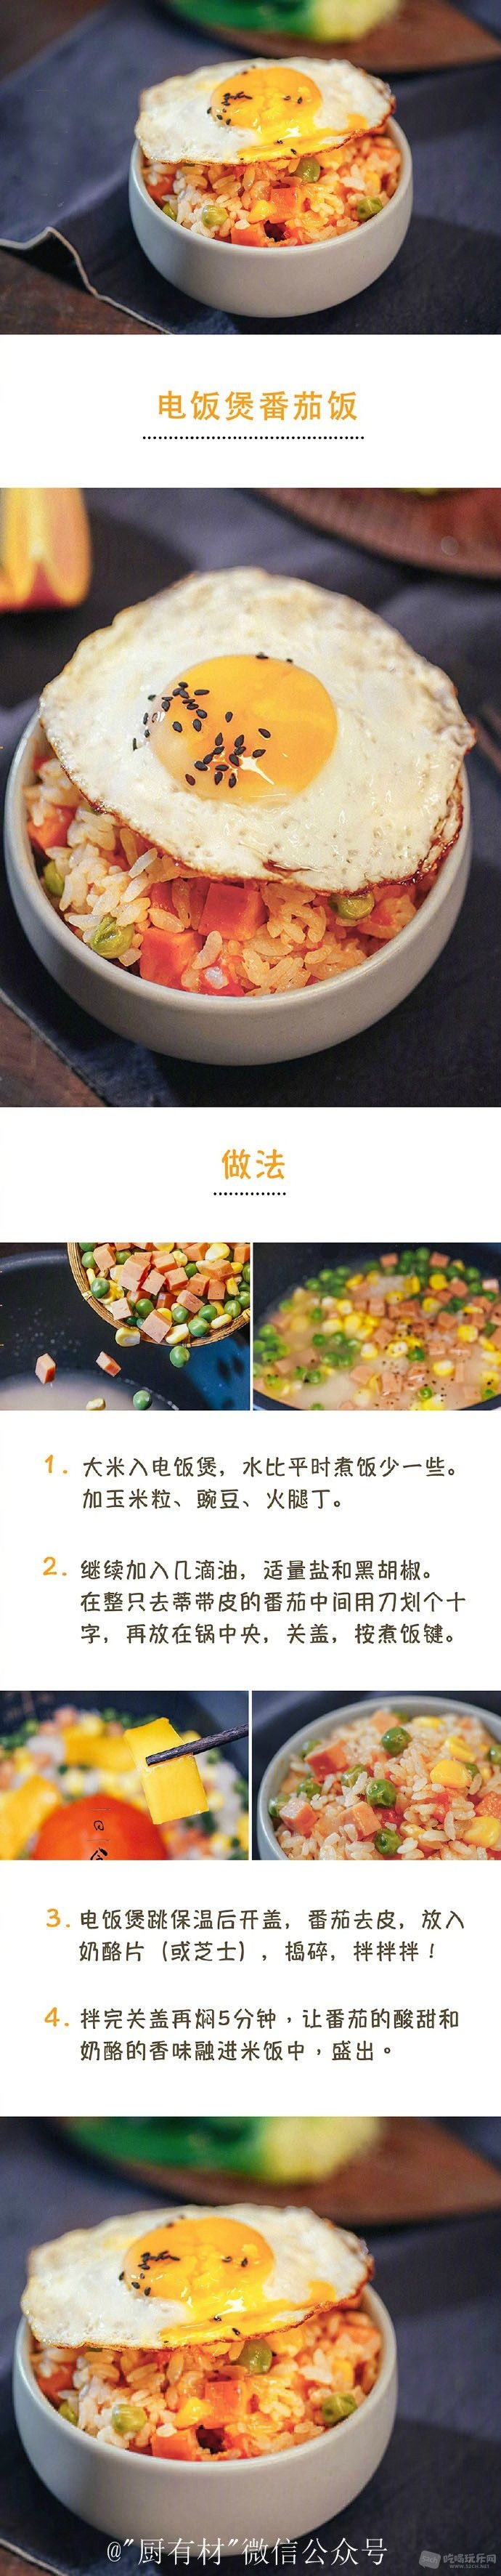 电饭煲微番茄饭www.cdfood.top